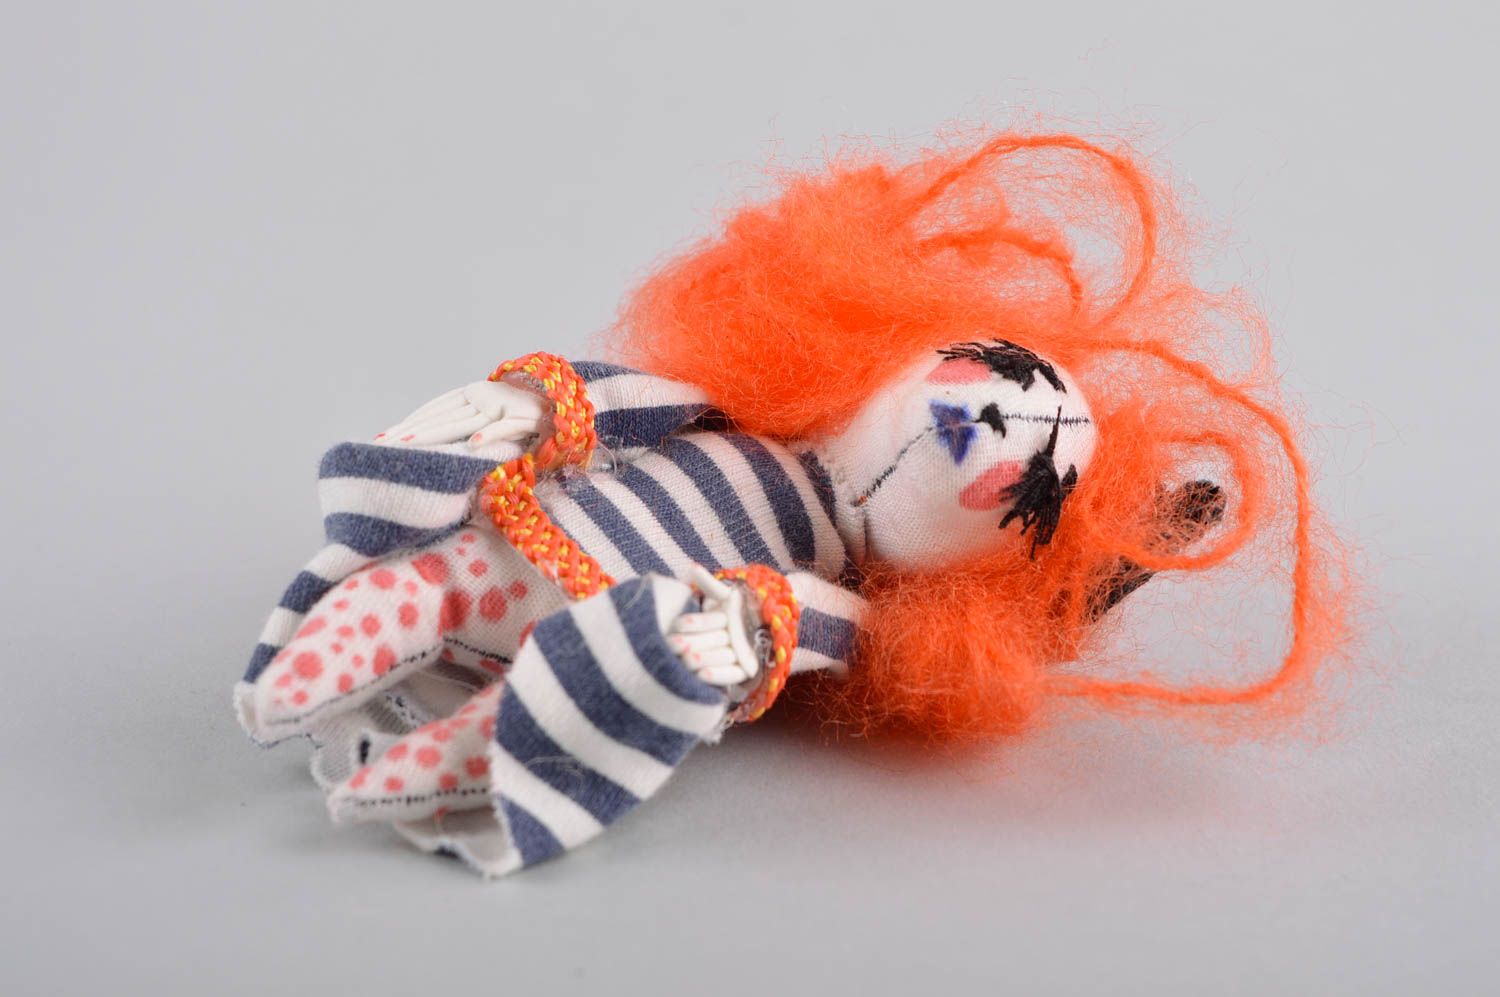 Авторская кукла игрушка ручной работы дизайнерская кукла тектсильная необычная фото 3